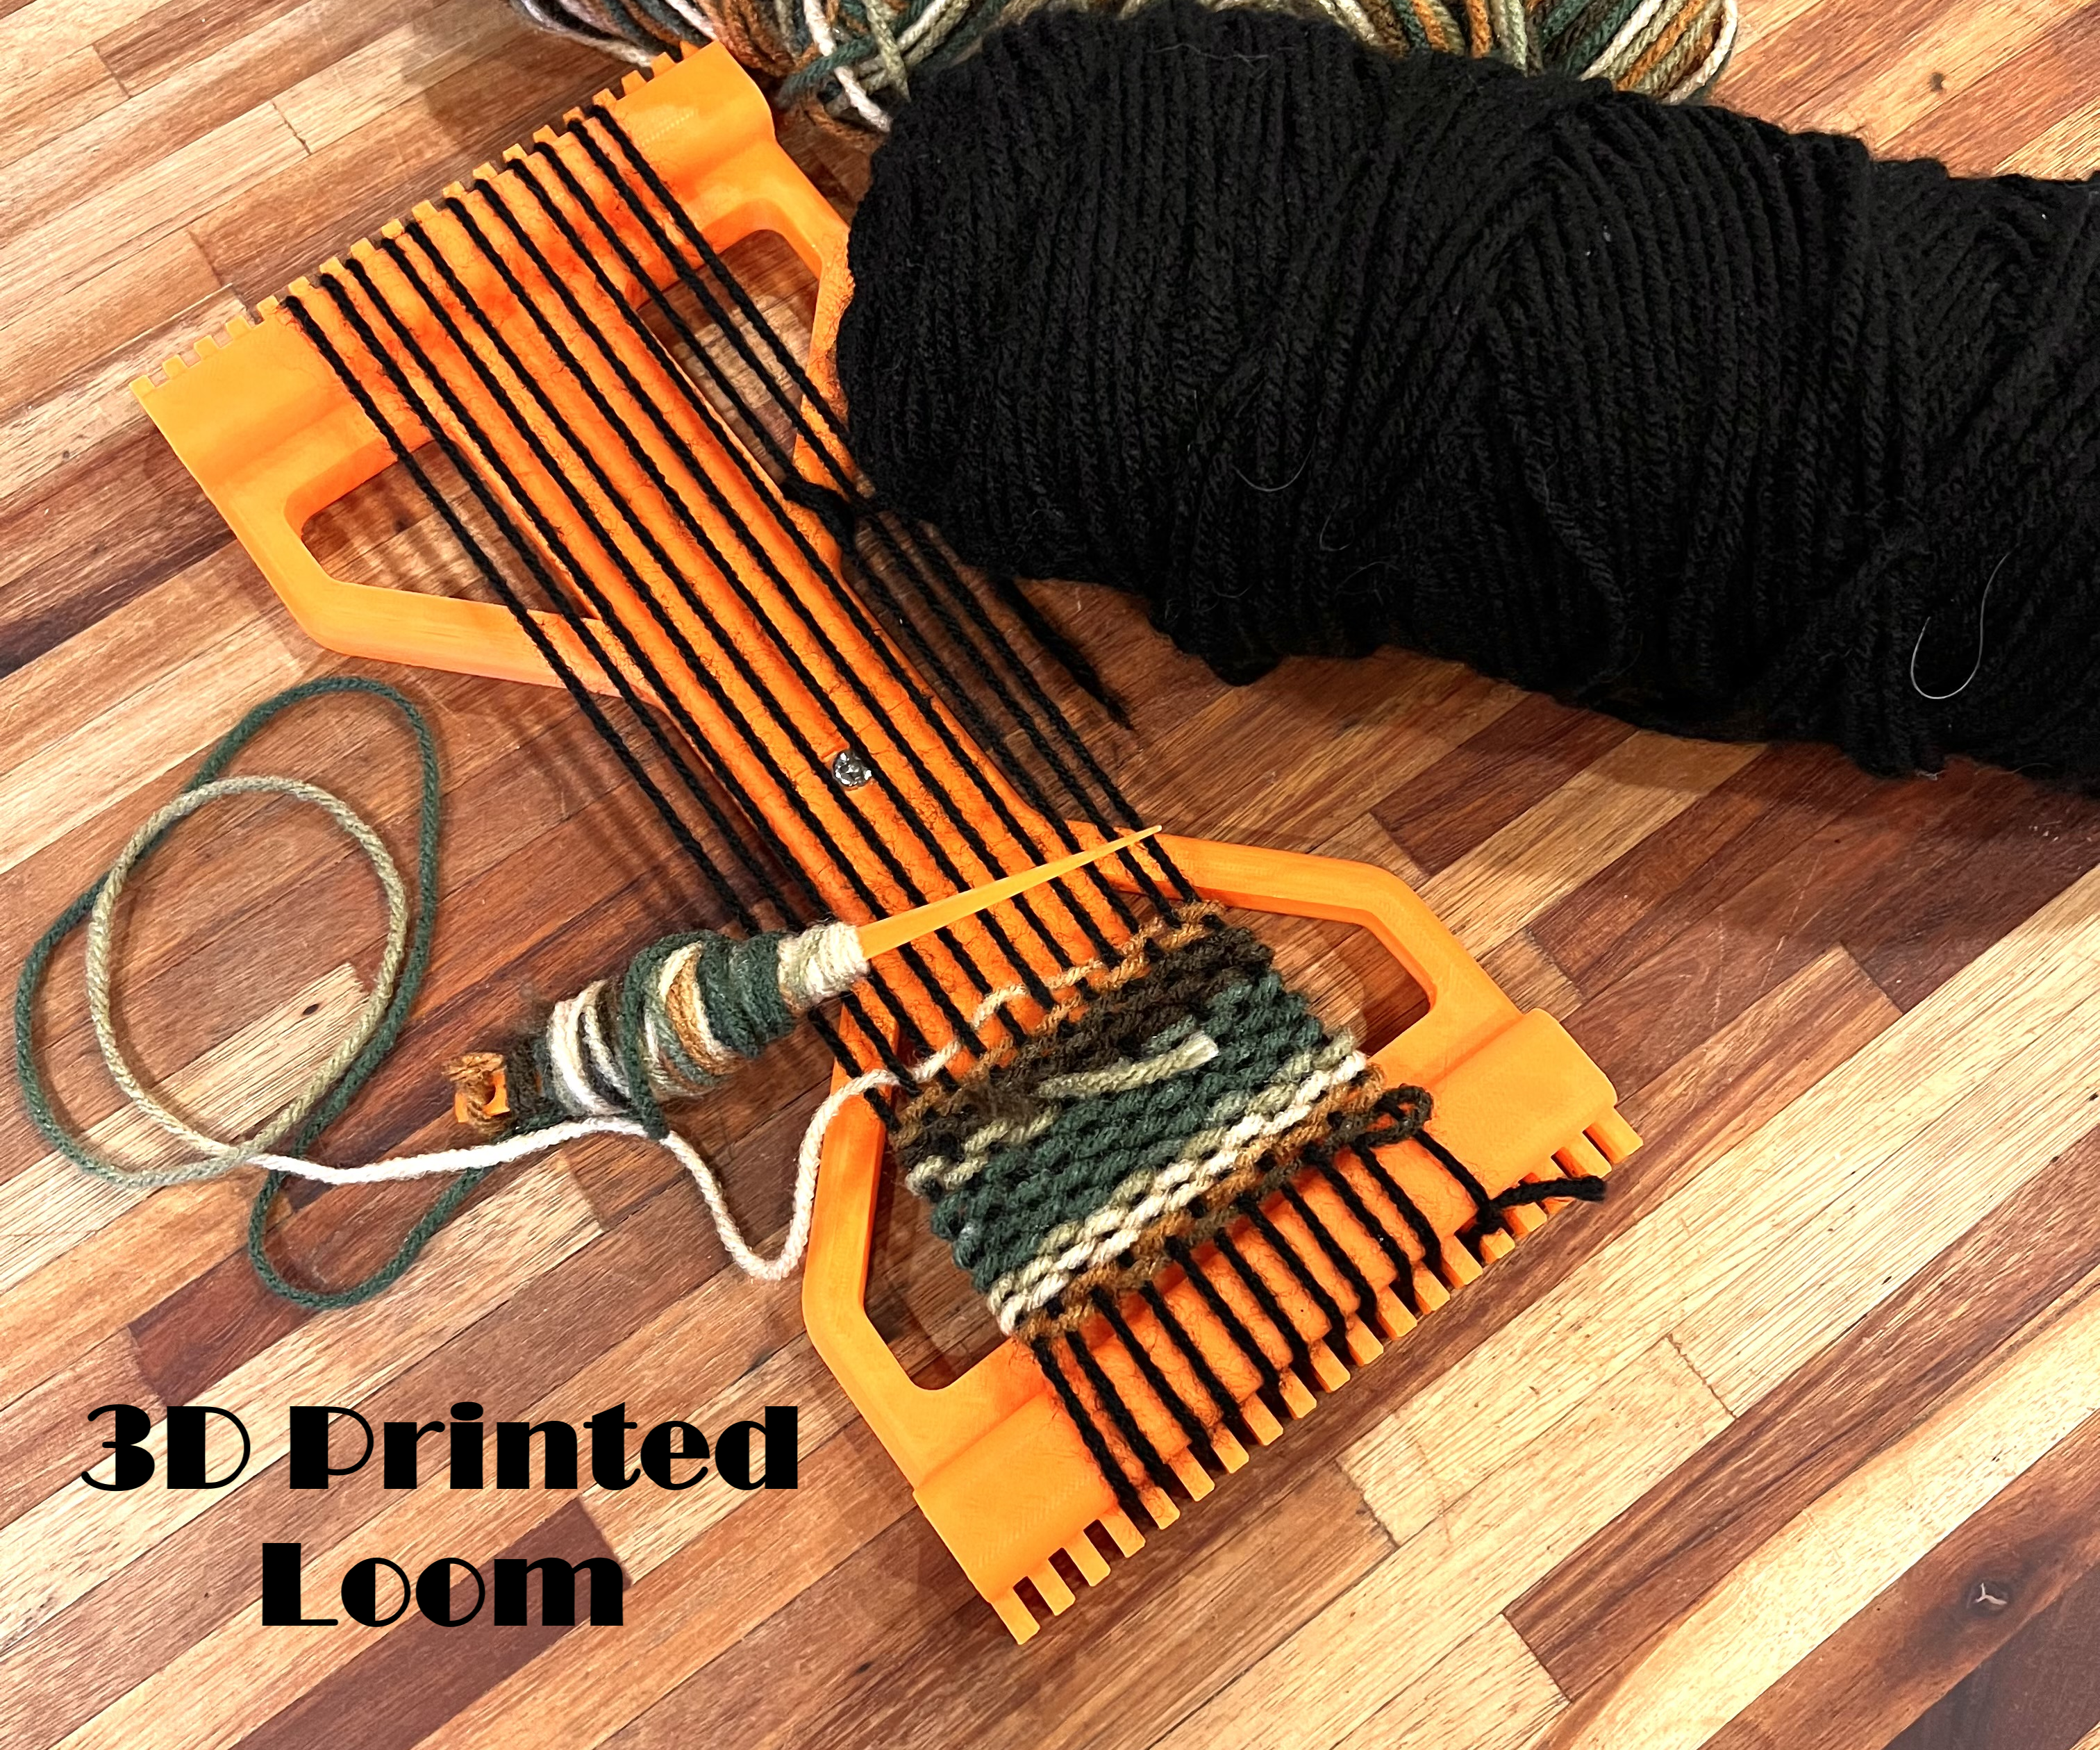 3D Printed Loom